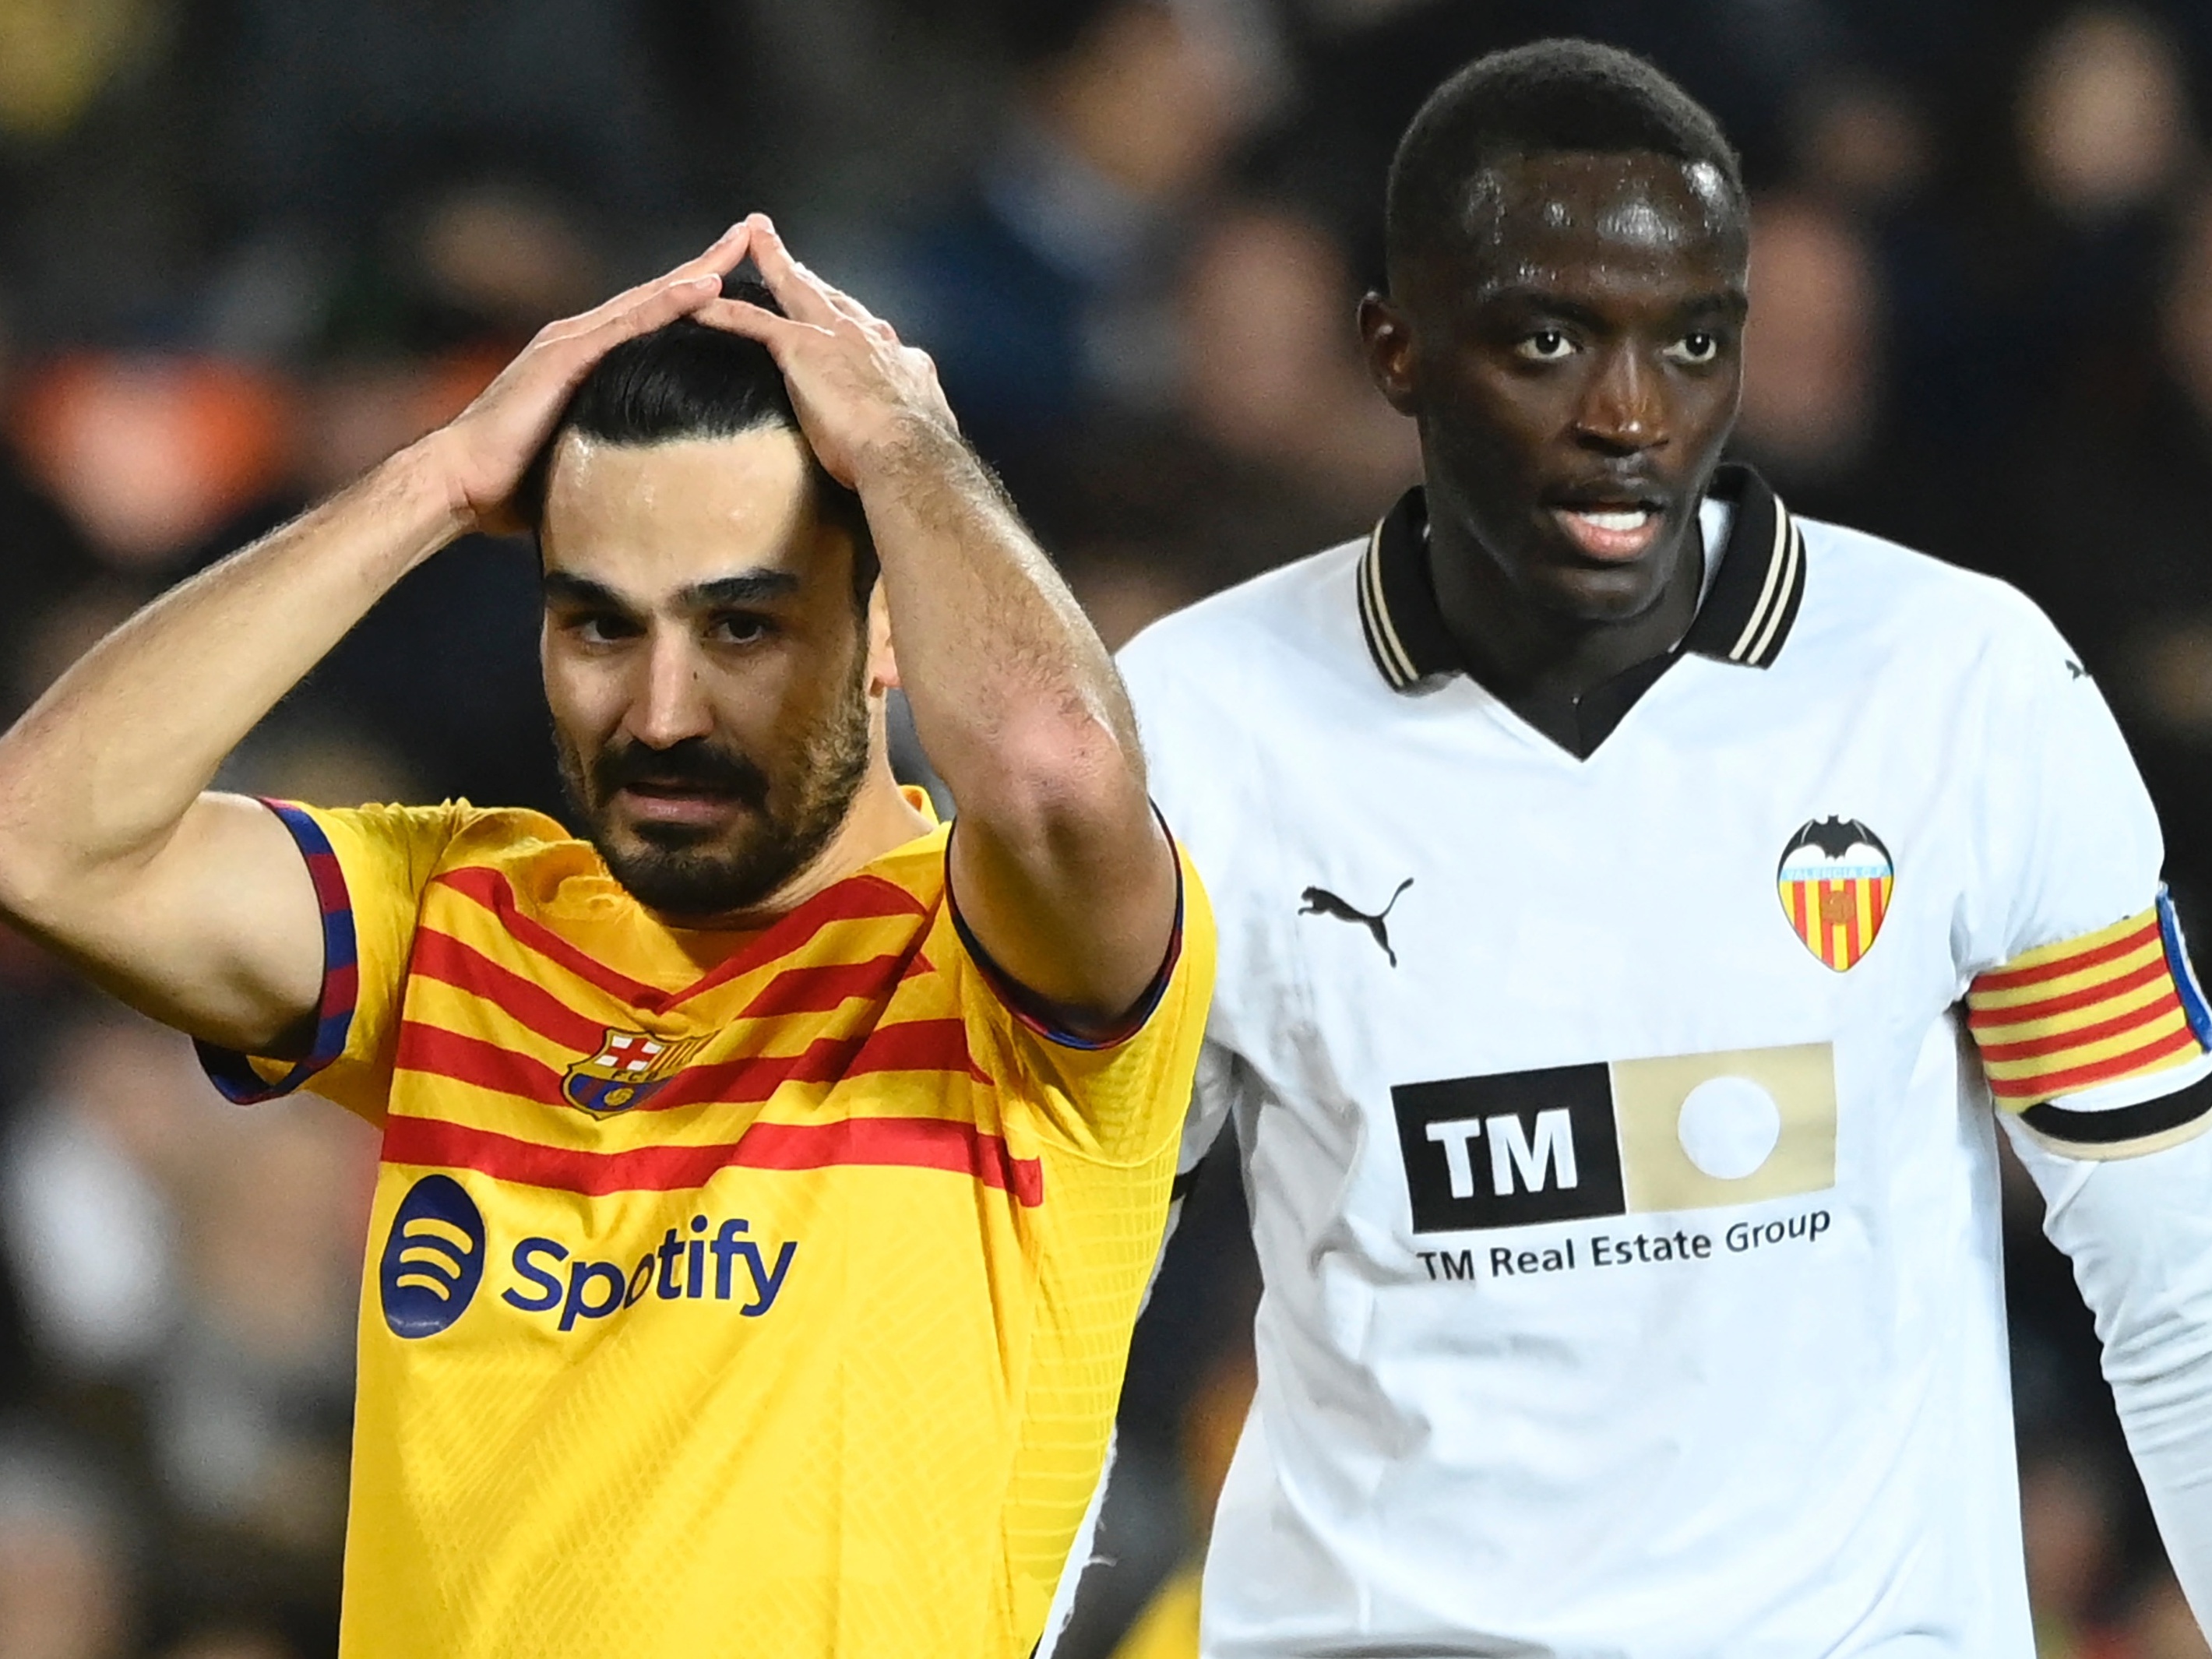 Valencia e Barcelona ficam no empate em partida pelo Espanhol